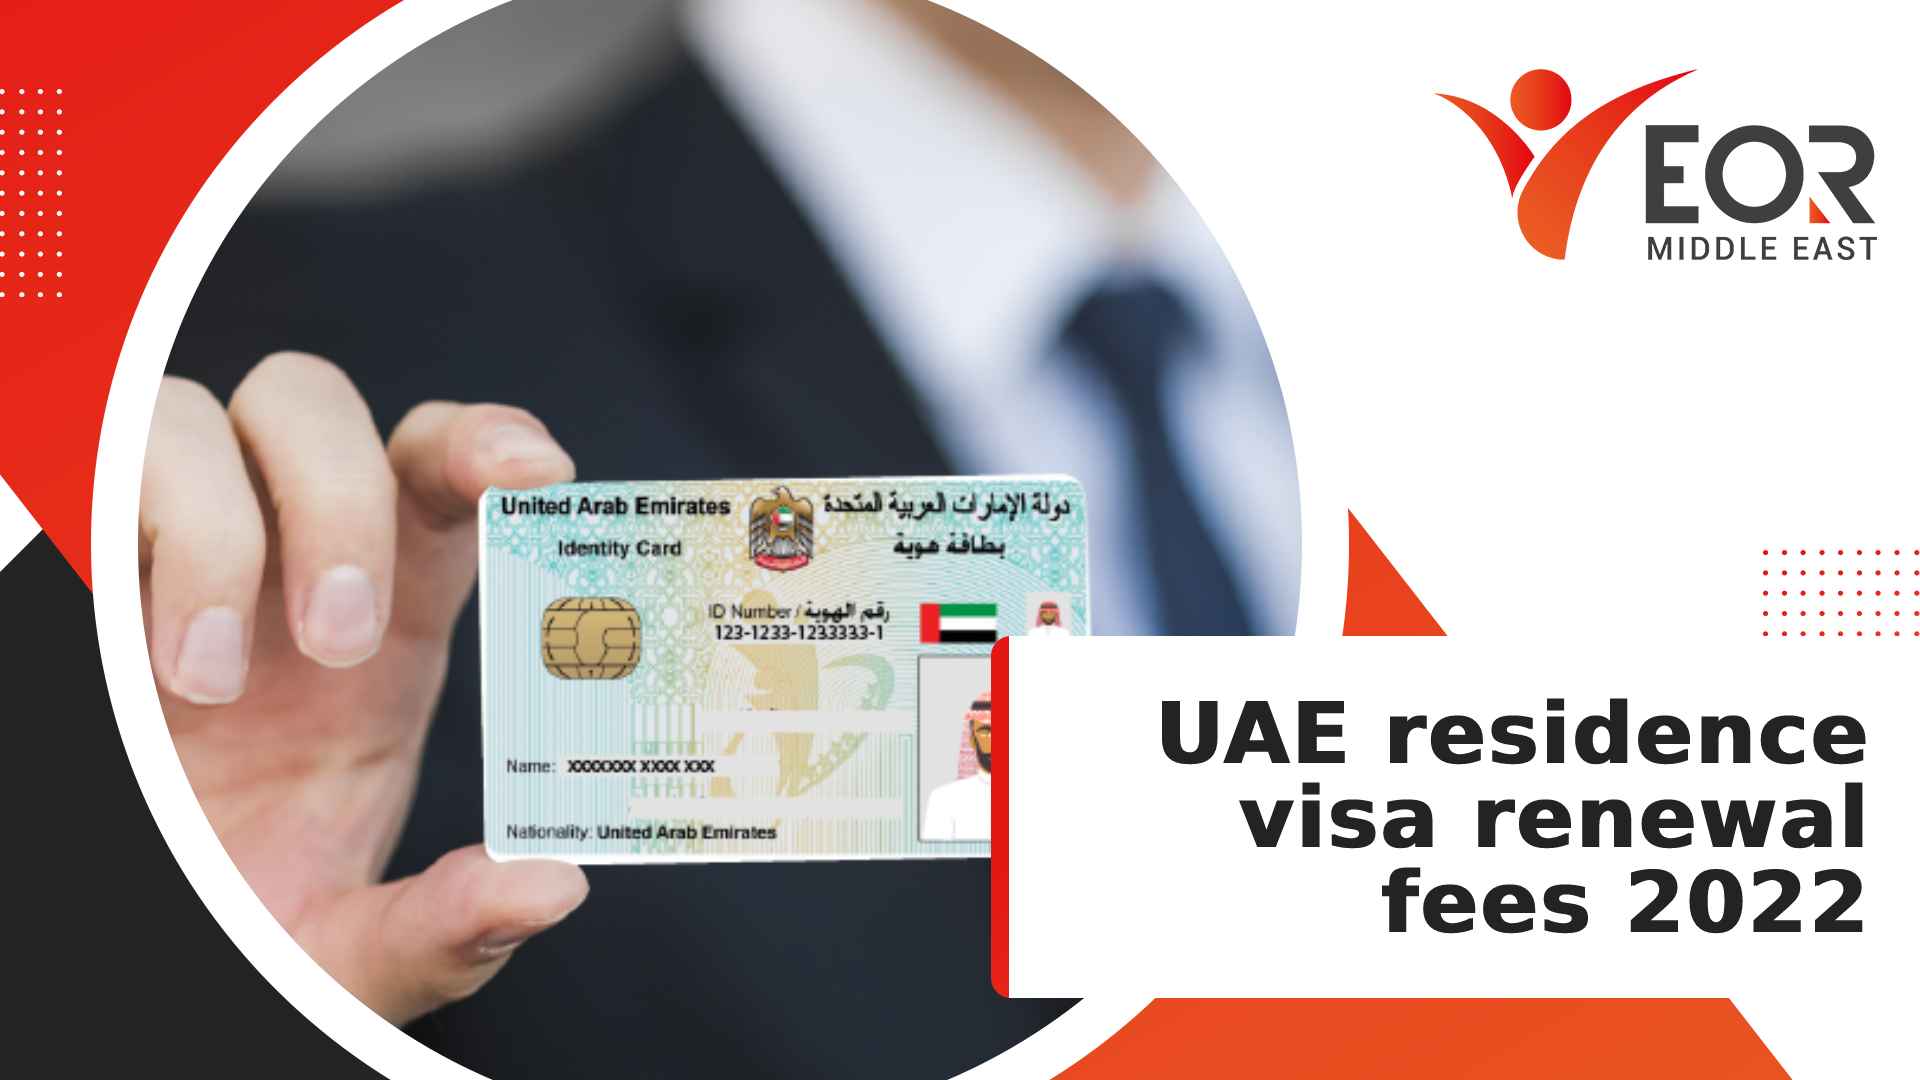 UAE residence visa renewal fee 2022